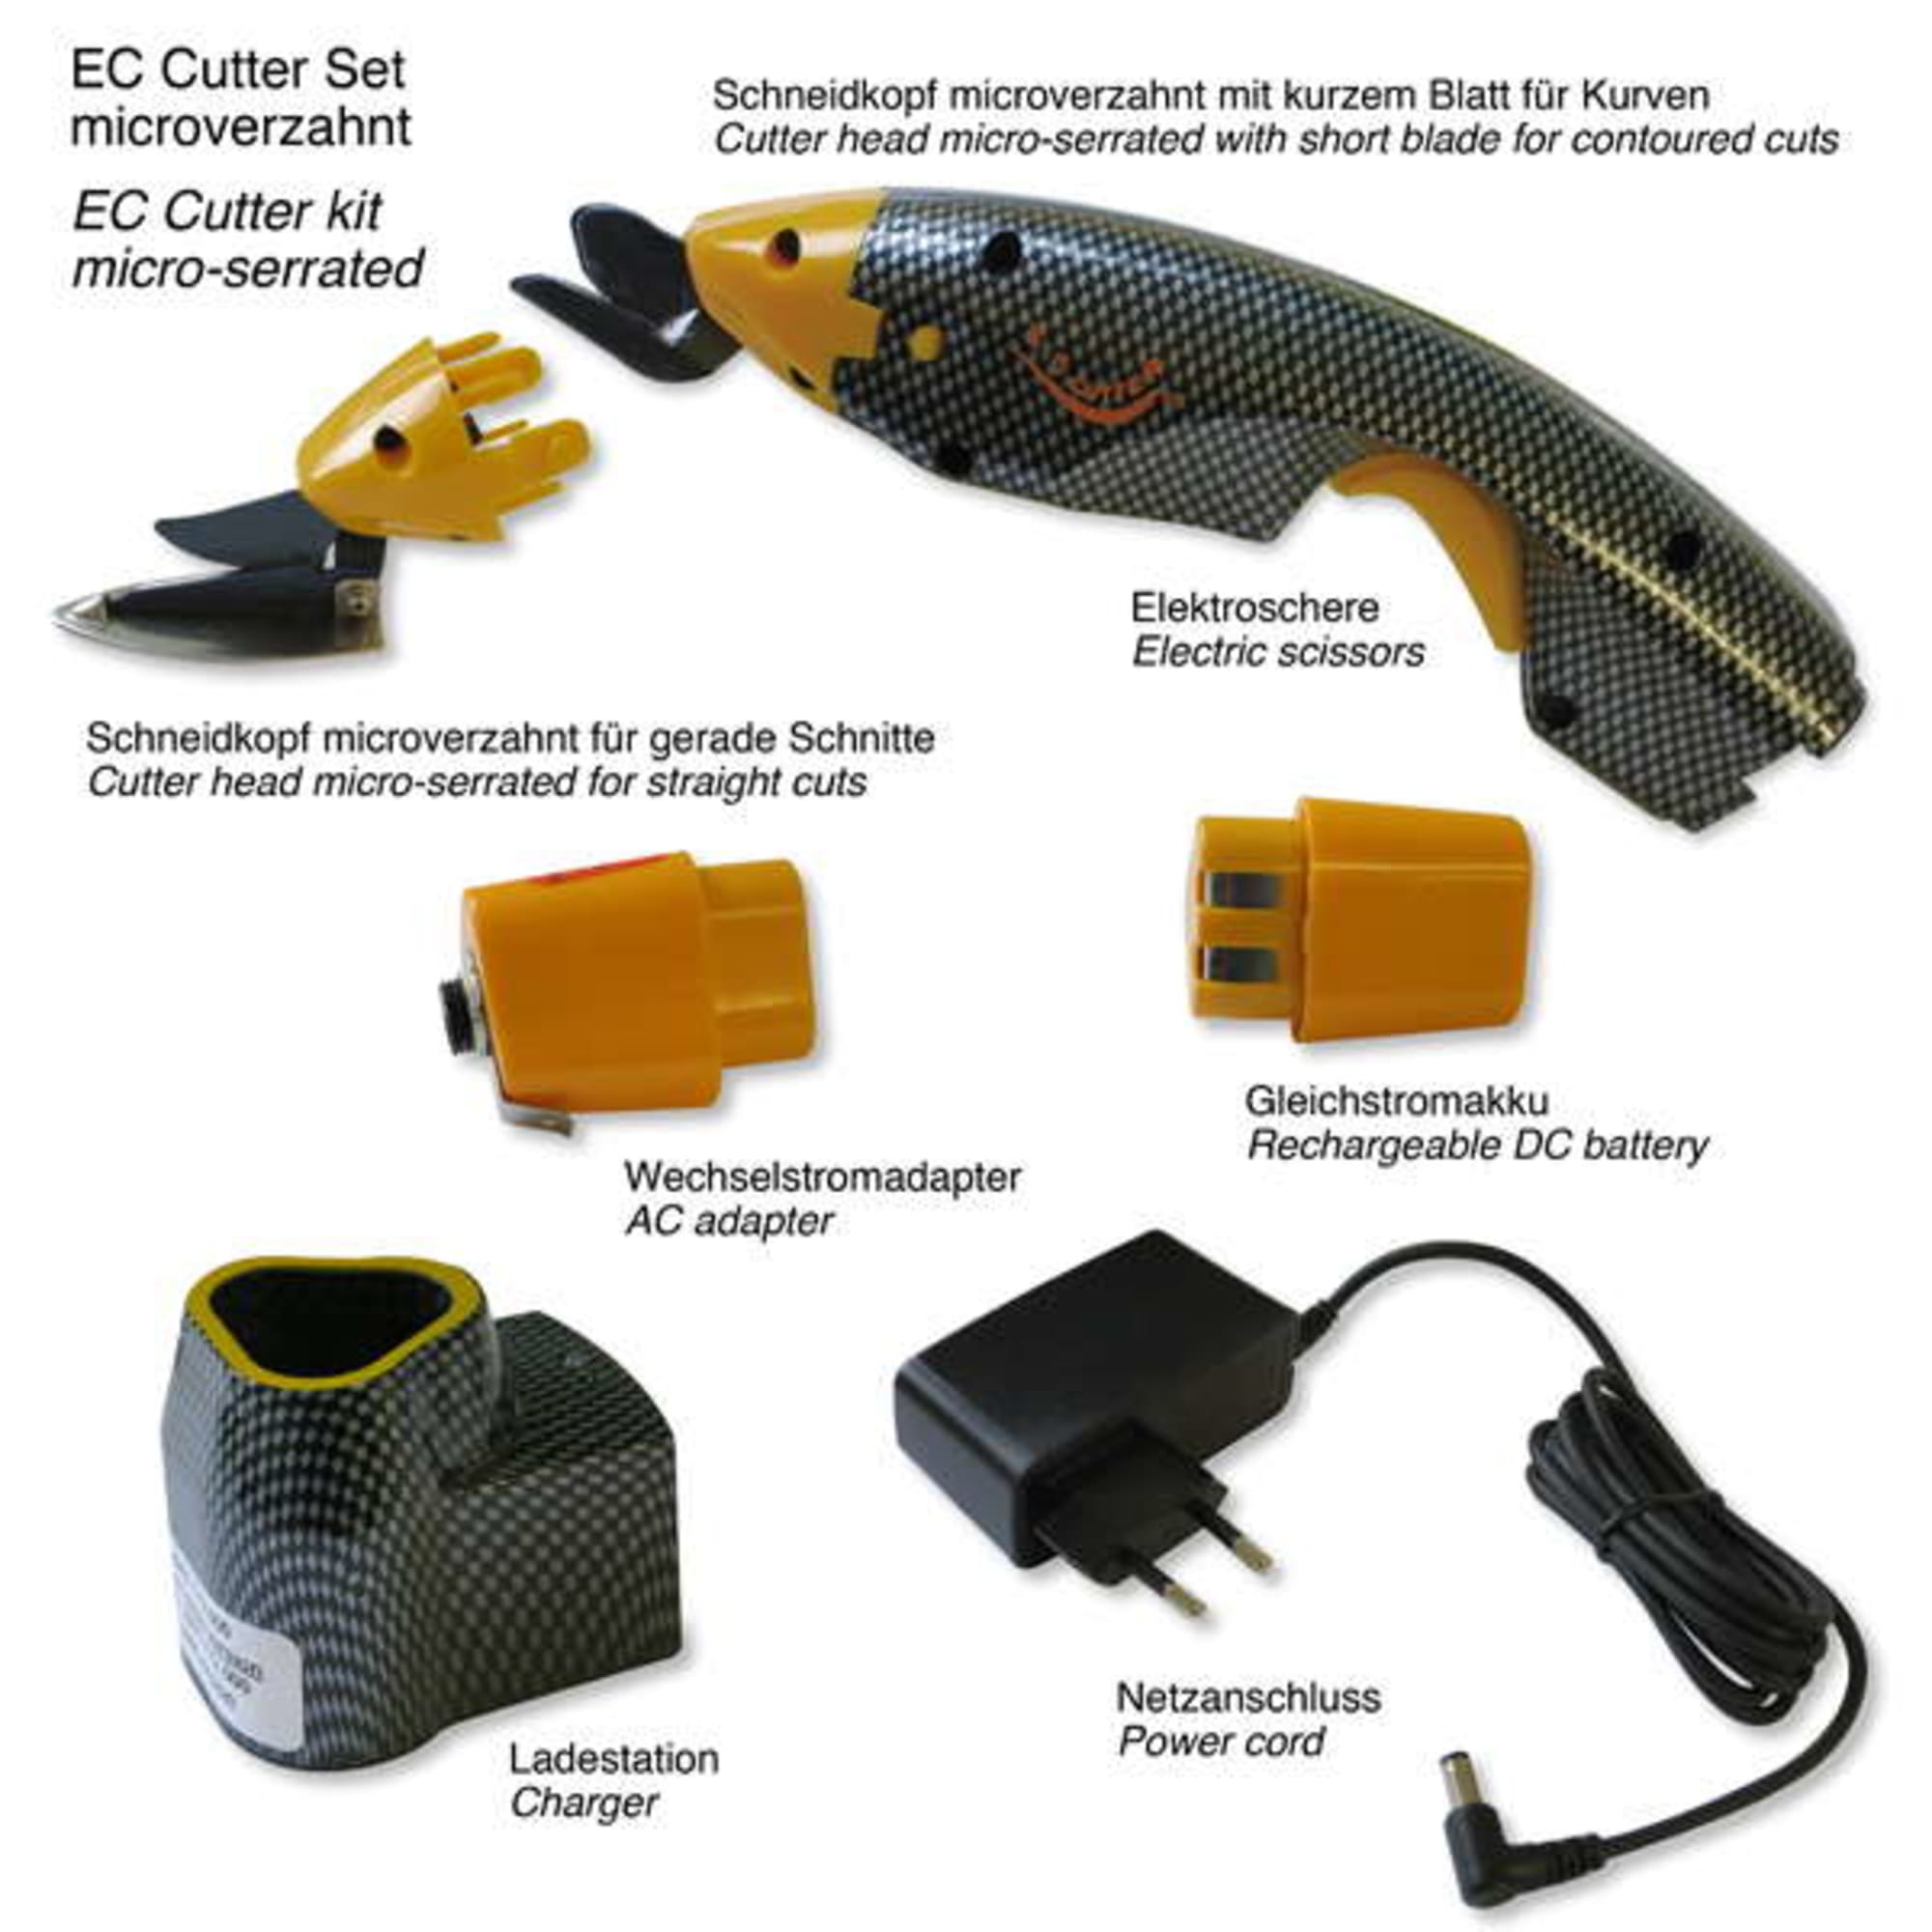 EC-Cutter Set mit microverzahnten Schneidköpfen, Bild 2